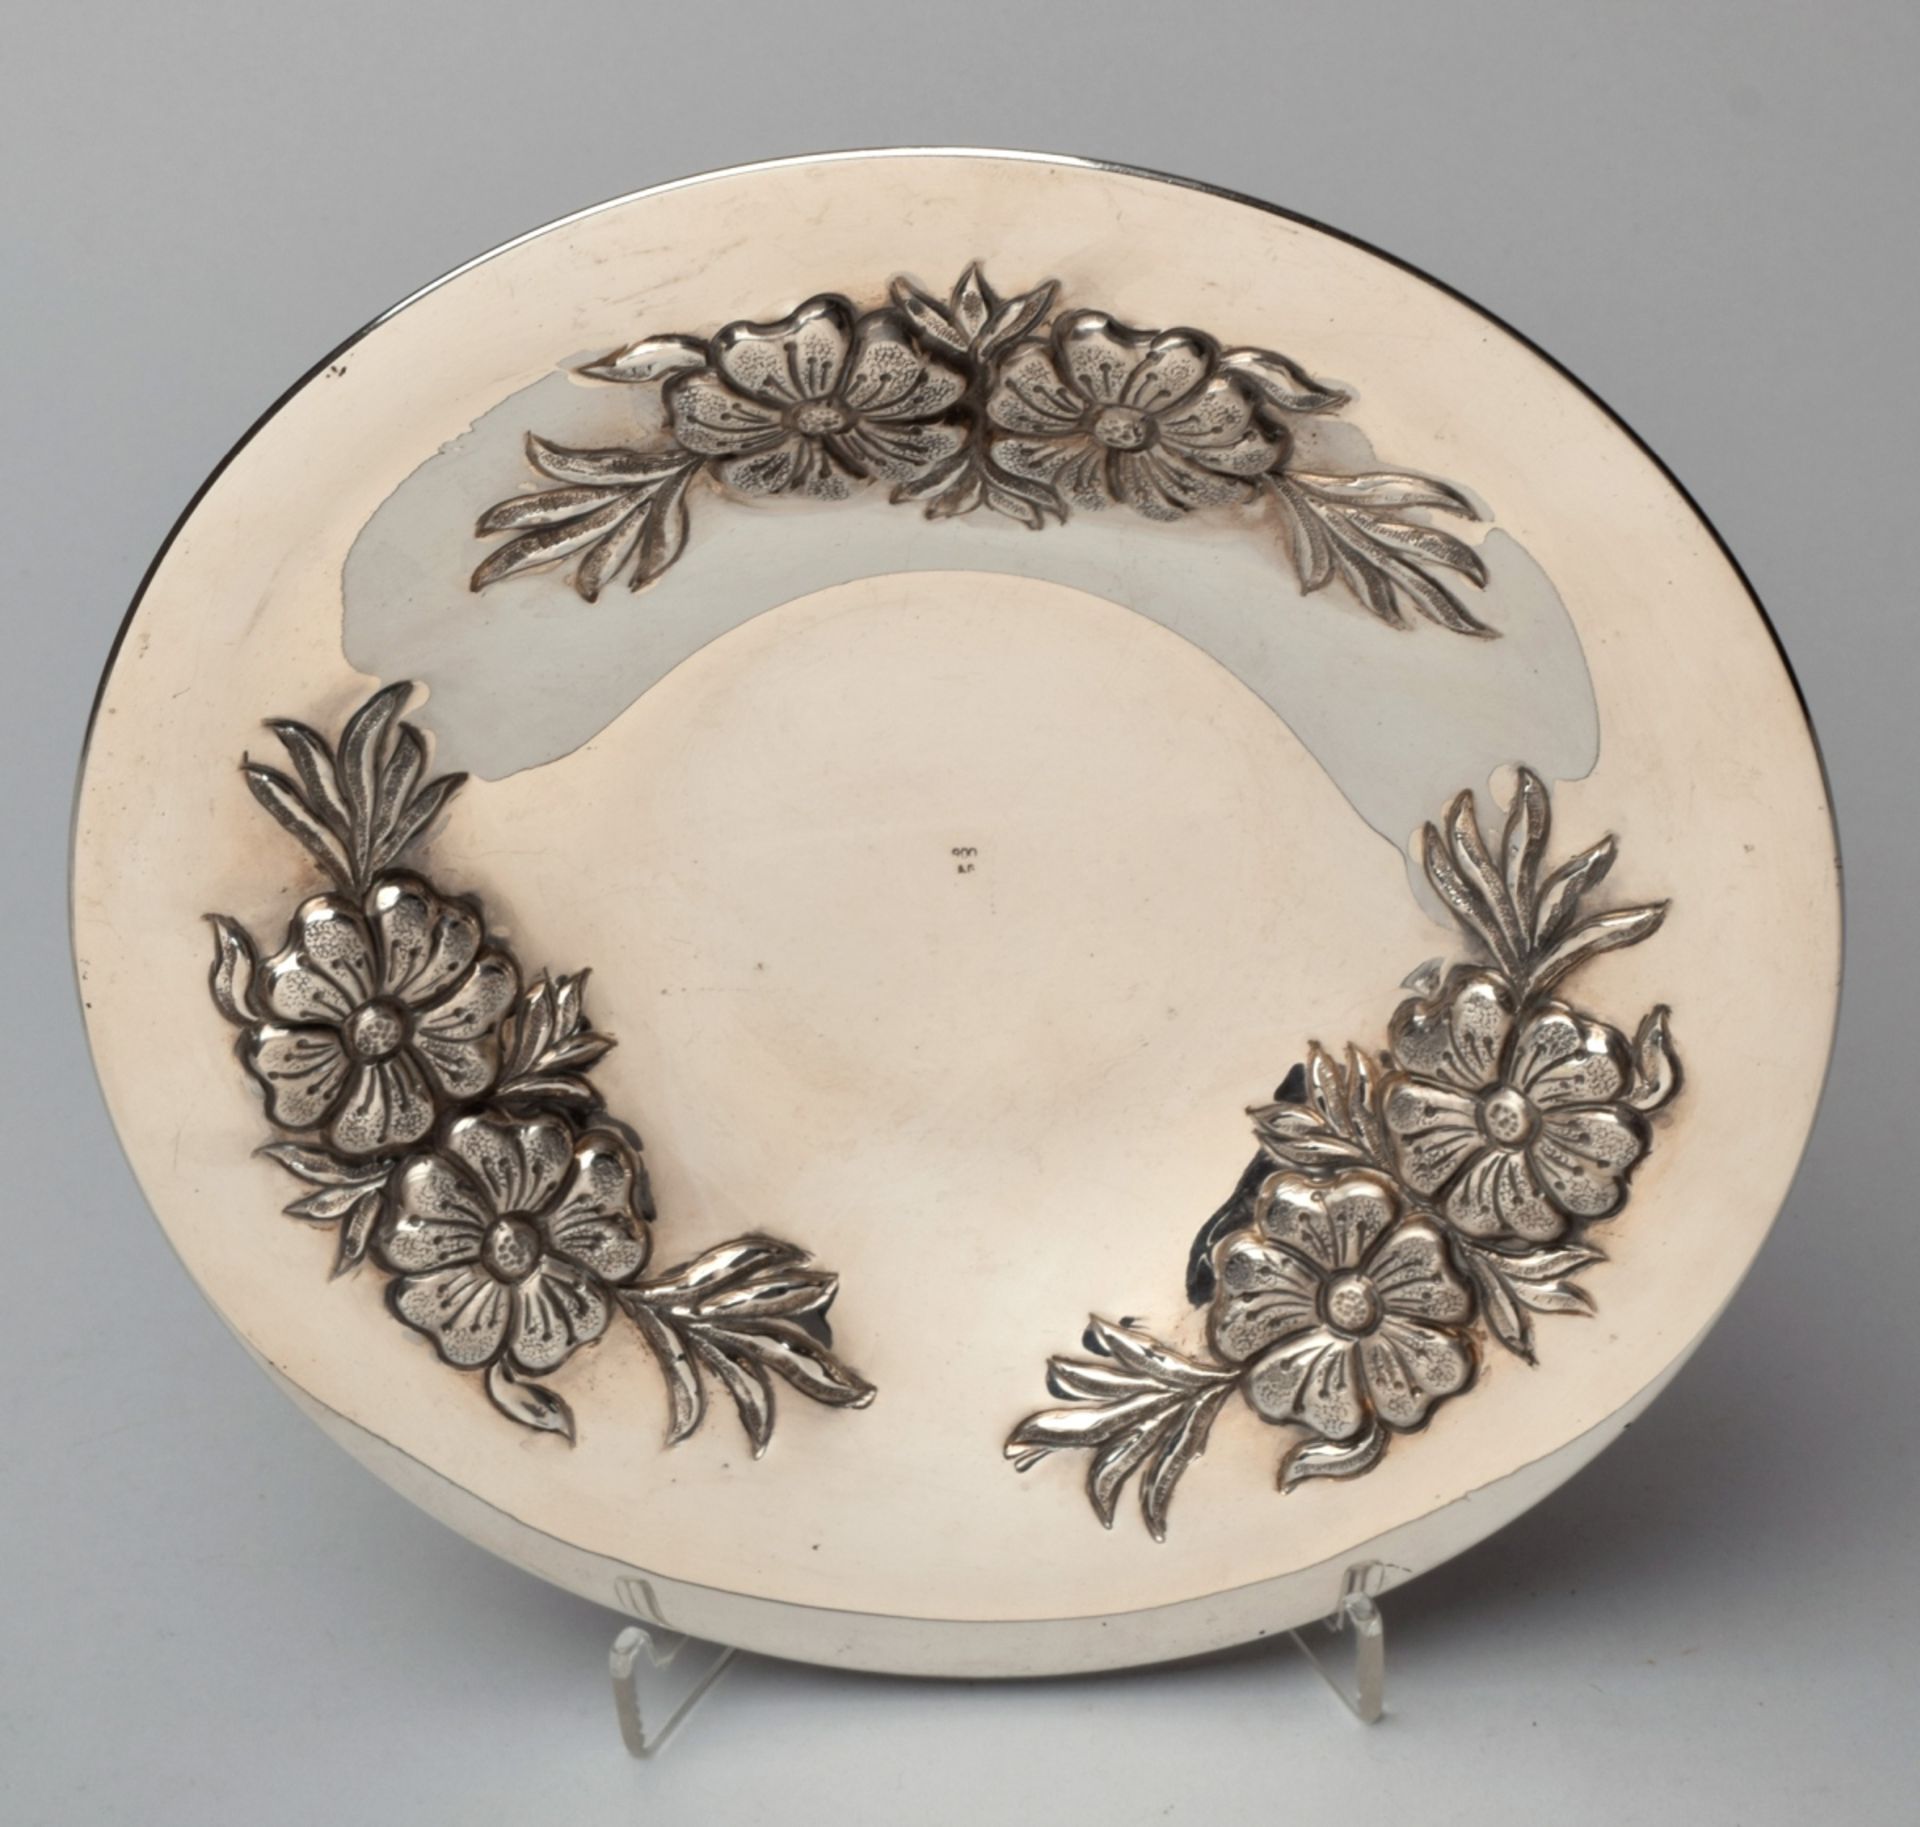 Schale Silber 900, undeutlich gemarkt, flach gemuldete Rundschale mit herausgearbeiteten Blütenmot - Bild 2 aus 2